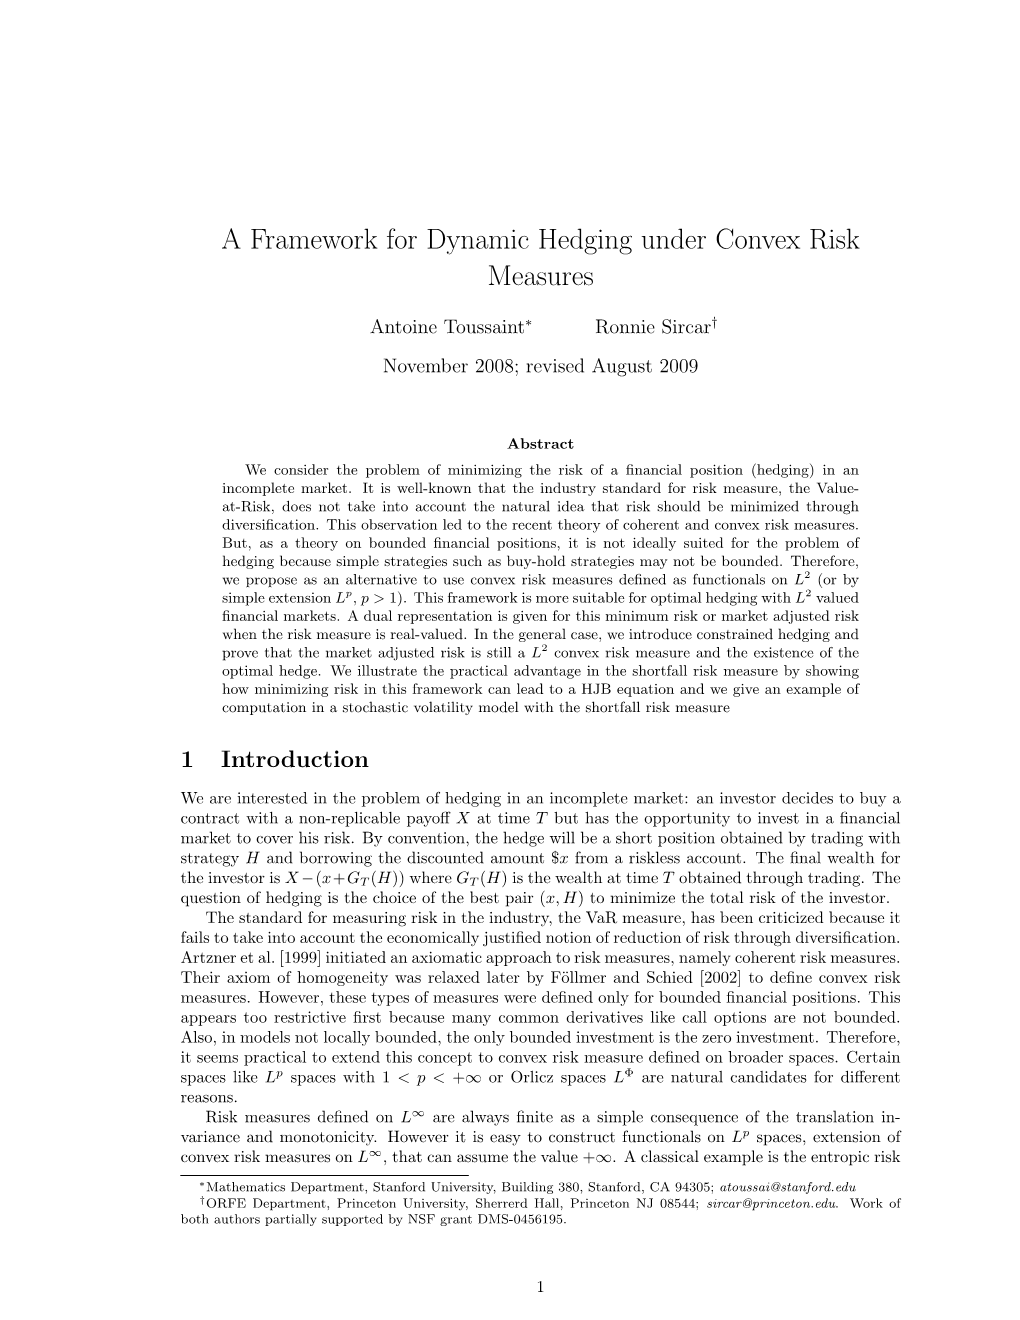 A Framework for Dynamic Hedging Under Convex Risk Measures